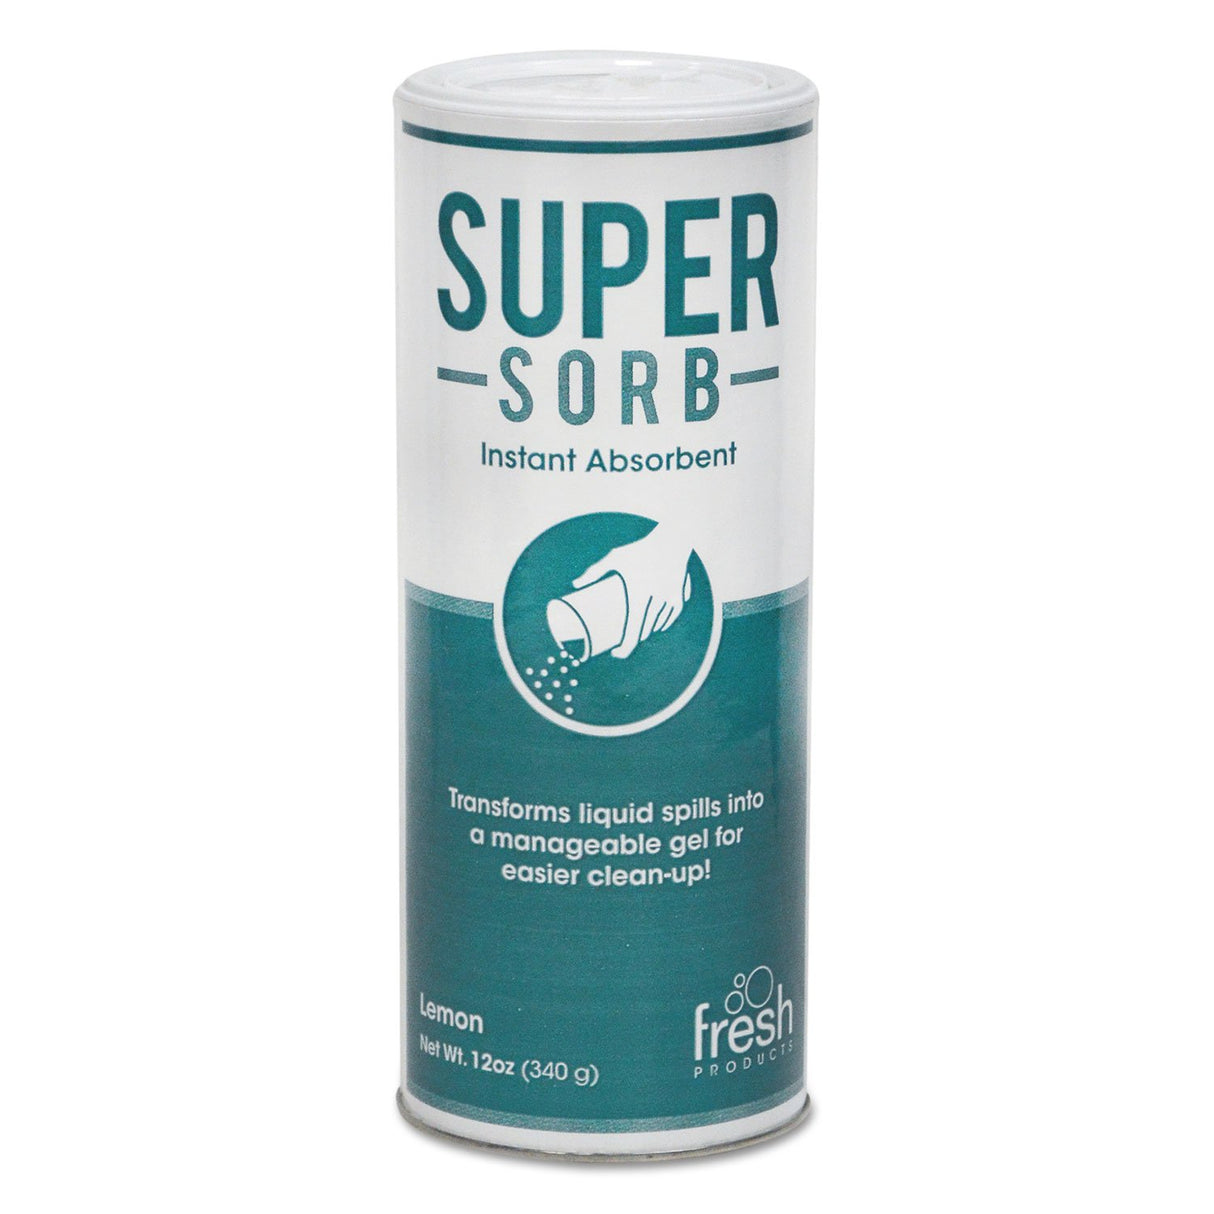 Supersorb Instant Absorbant, Lemon Scent, 12 oz Canister